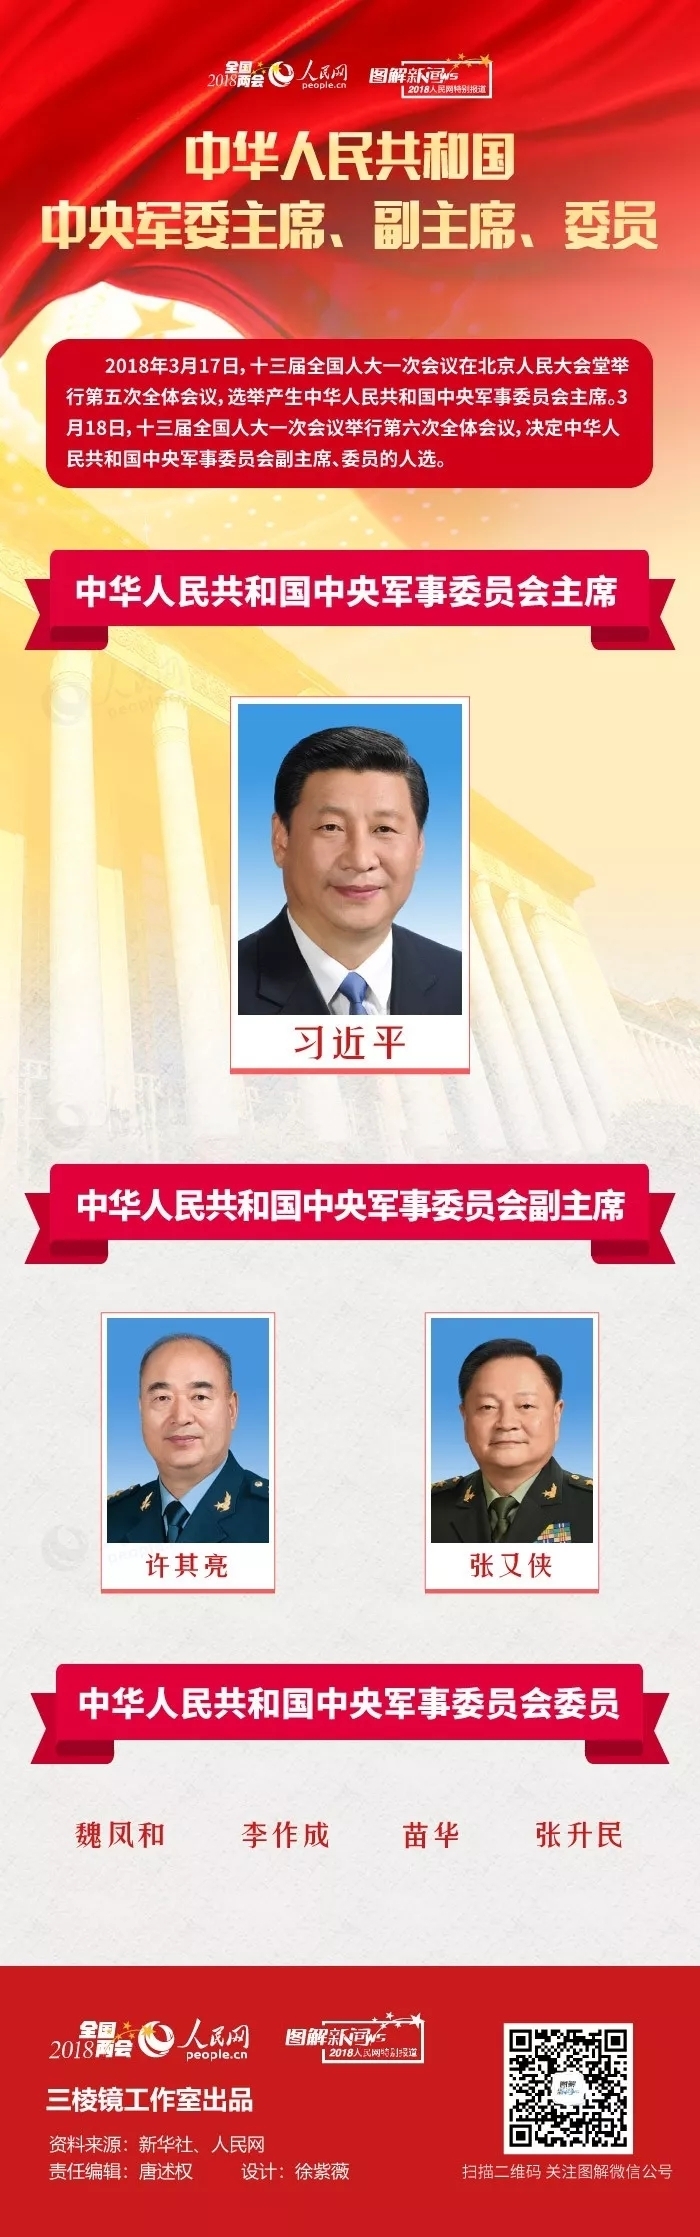 图解:中华人民共和国中央军委主席,副主席,委员